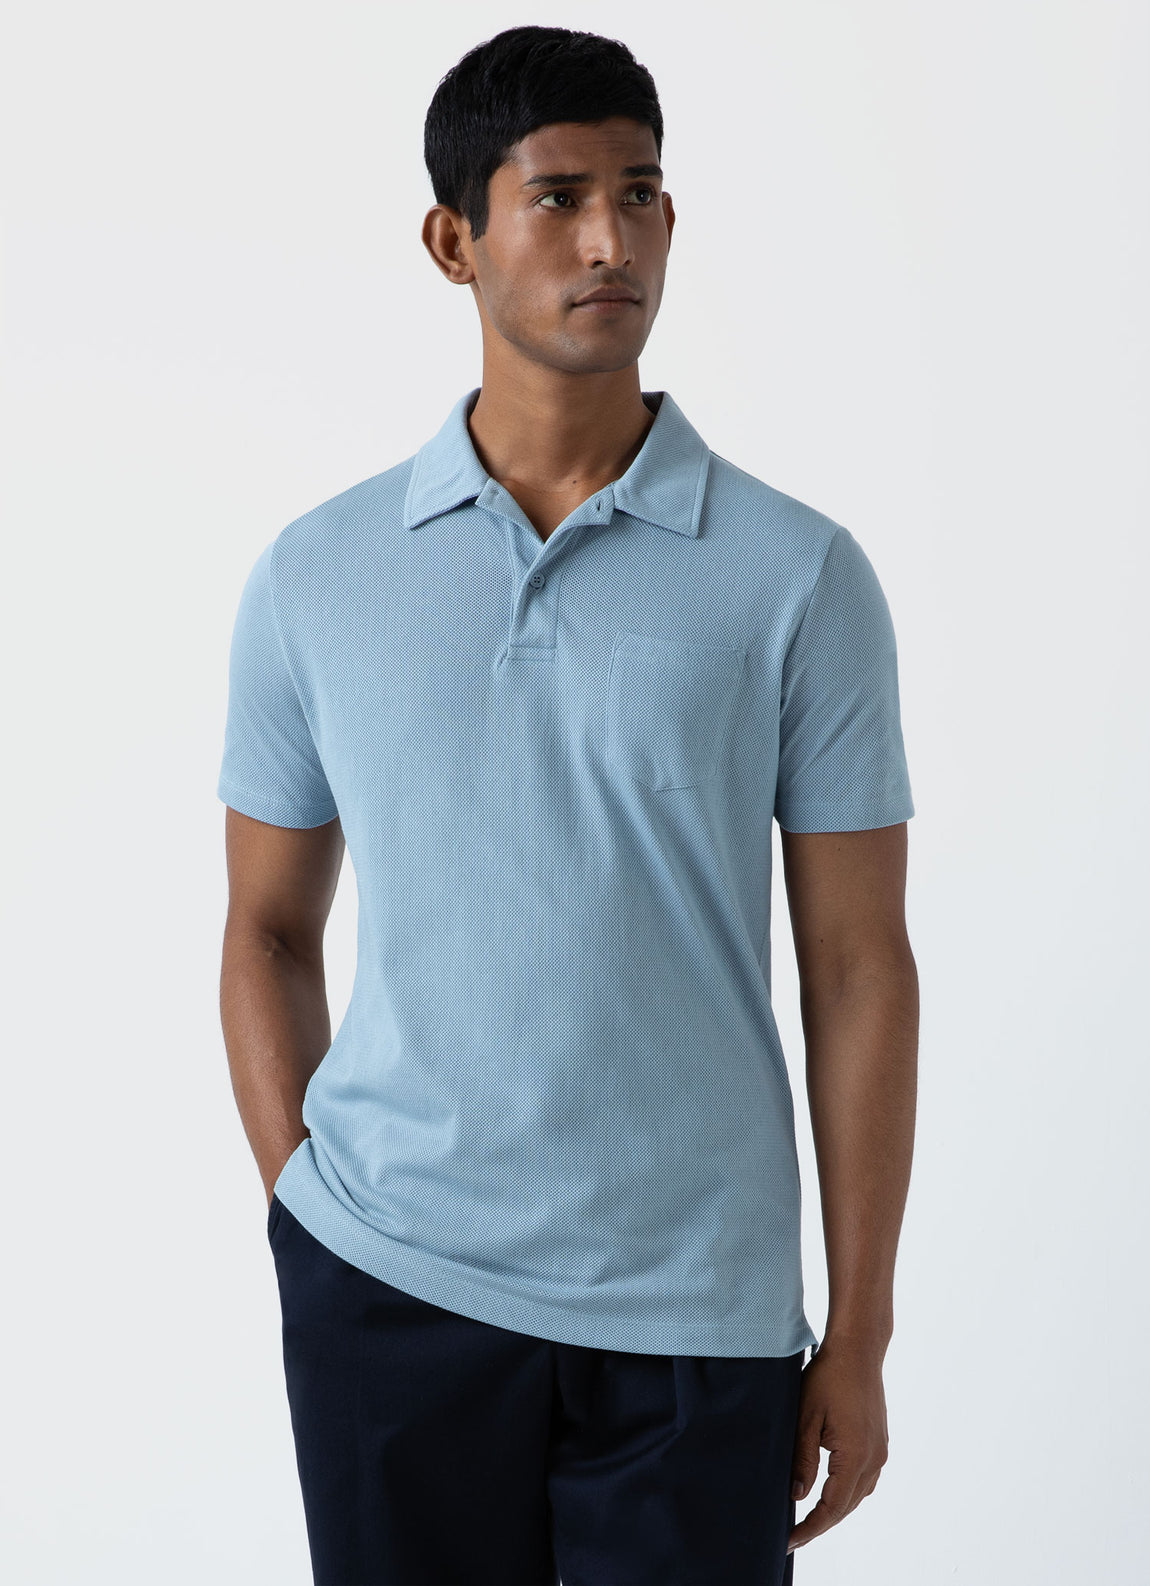 Men's Riviera Polo Shirt in Sky Blue | Sunspel